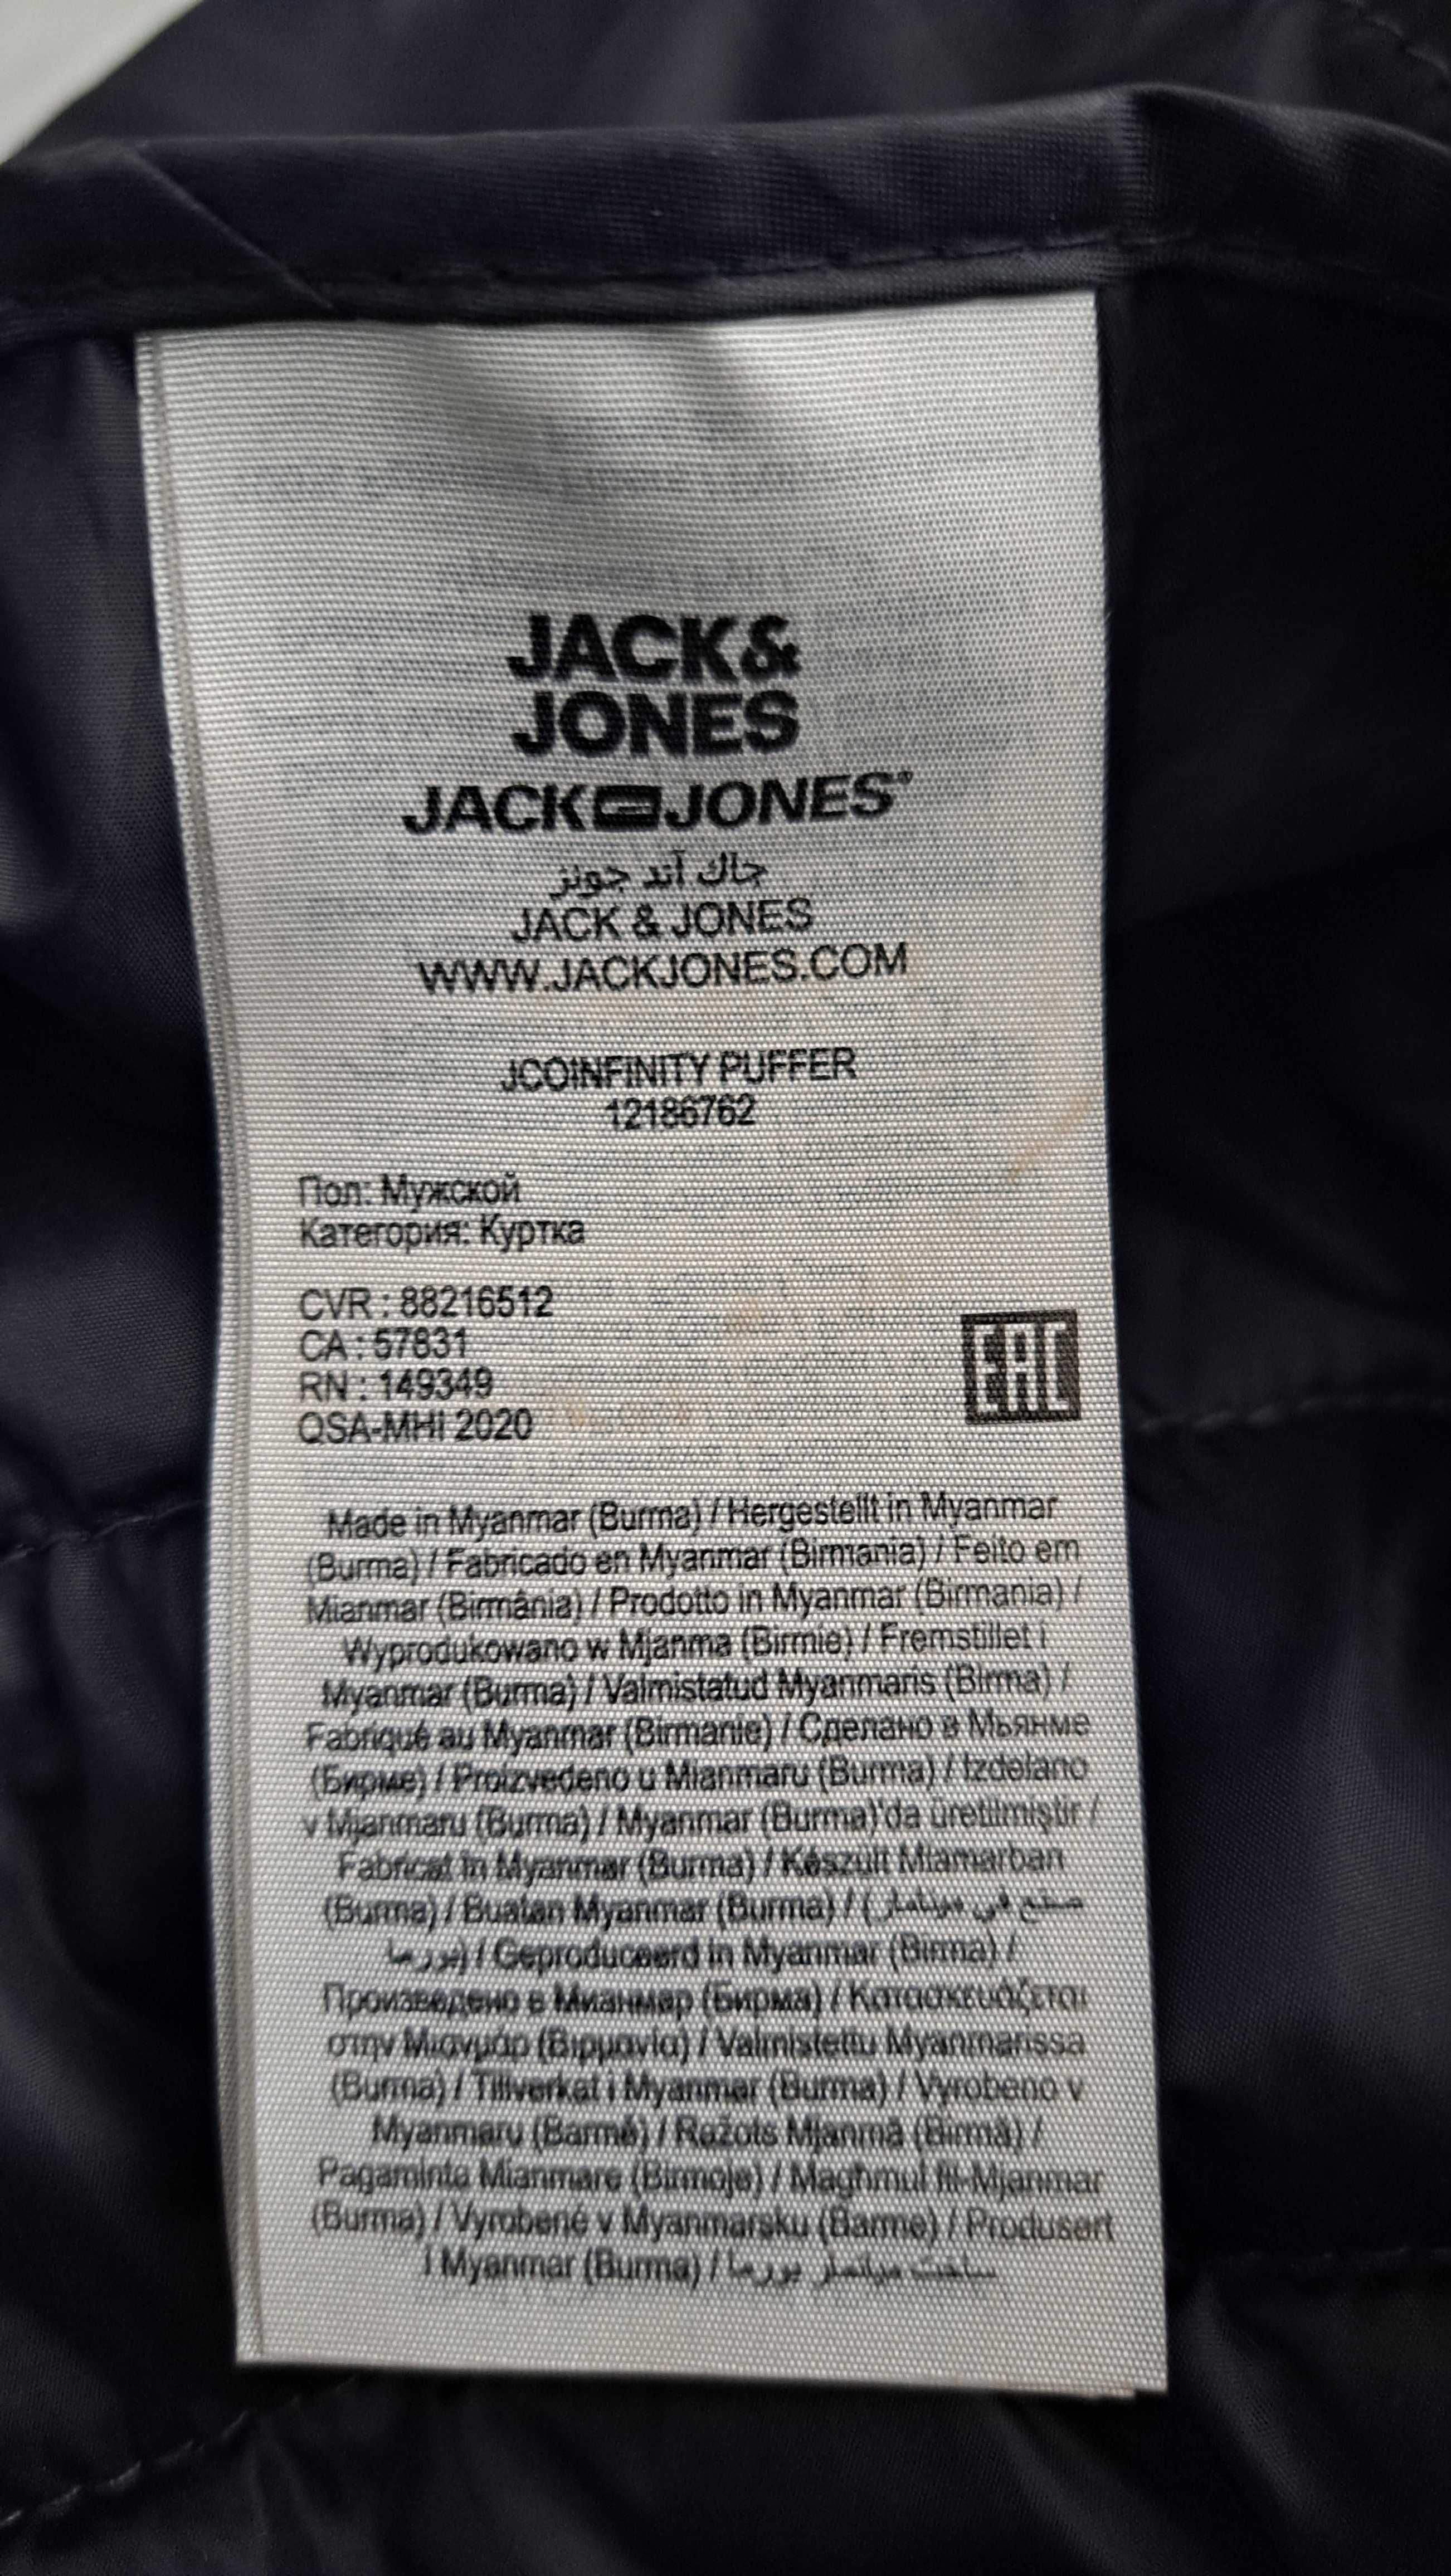 Jack&Jones -JCOINFINITY PUFFER-  Męska Lekka Kurtka Pikowana M